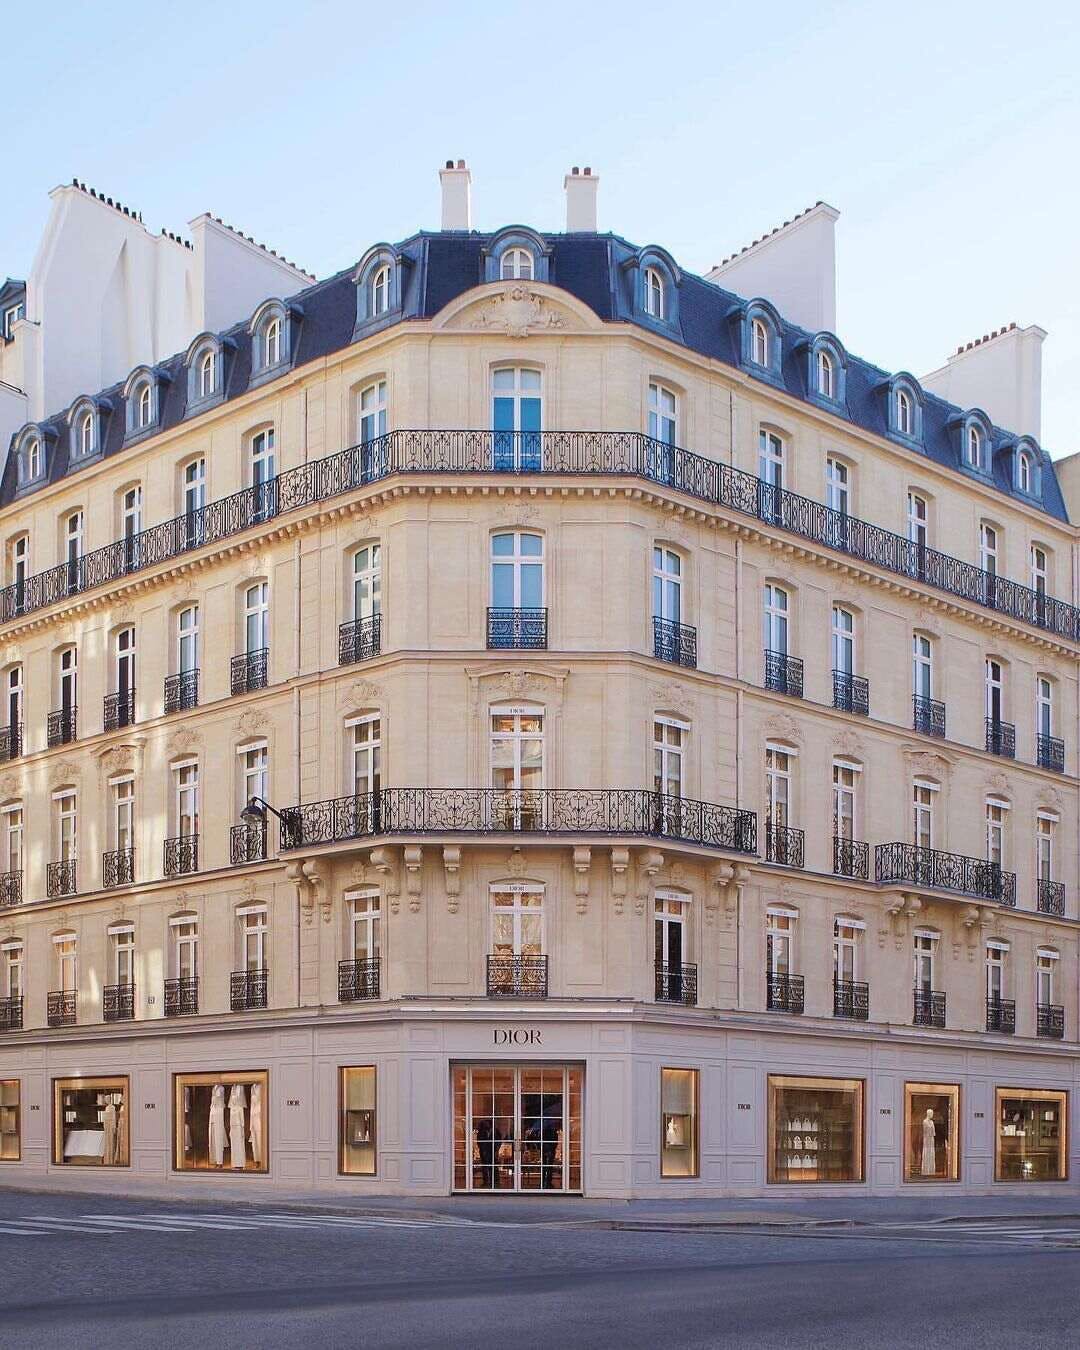 Bên ngoài cửa hàng flagship hoành tráng của Dior. Cửa hàng này có một khu vườn, viện bảo tàng, khách sạn, xưởng may.